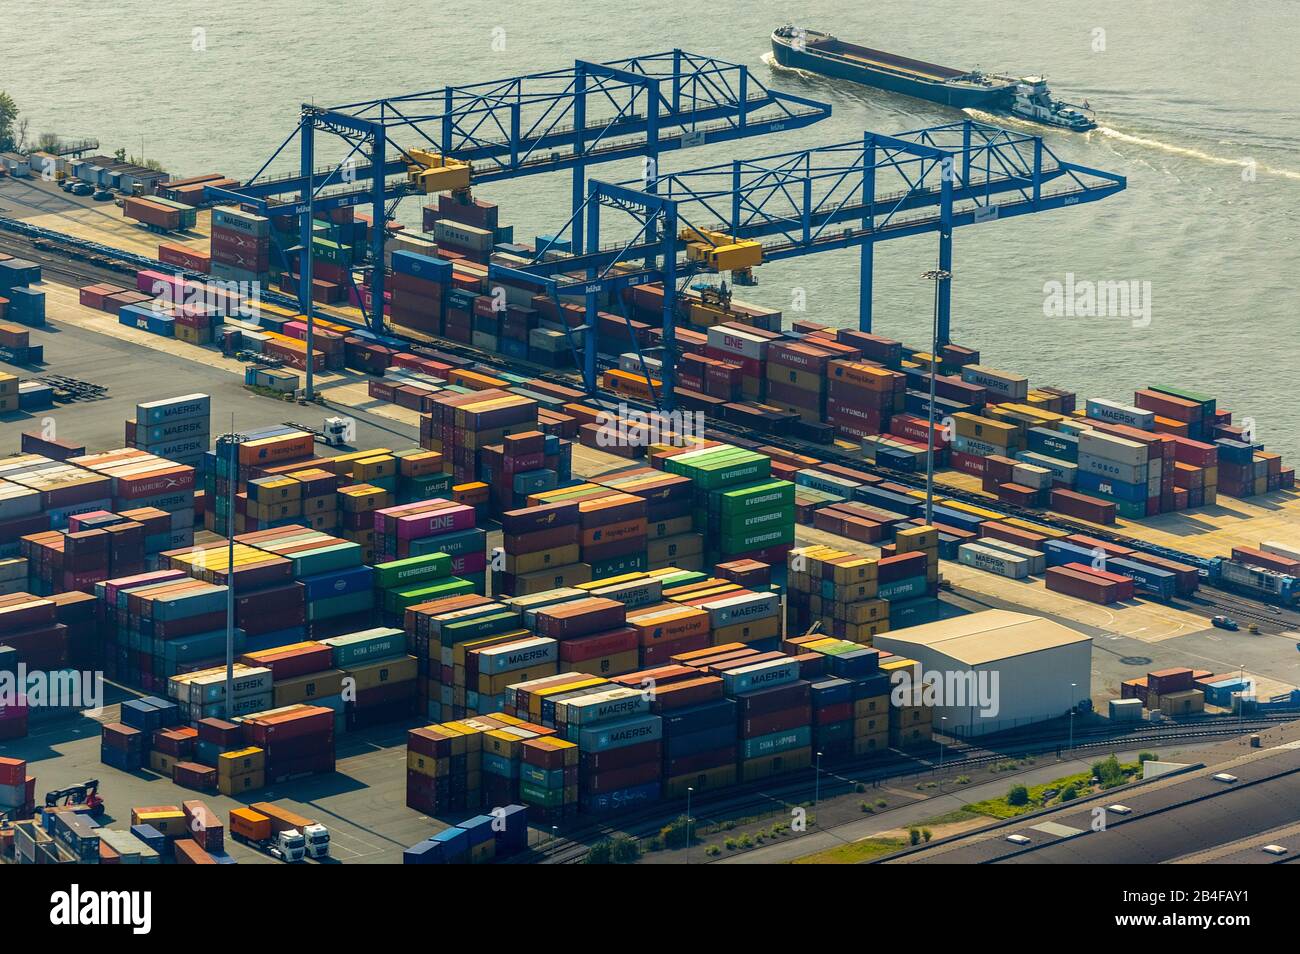 Vista aérea del almacén de contenedores y del punto de transbordo en el puerto deportivo II de la zona portuaria de Duisburg, en la región metropolitana de Rin-Ruhr, en el estado de Renania del Norte-Westfalia (Alemania) Foto de stock